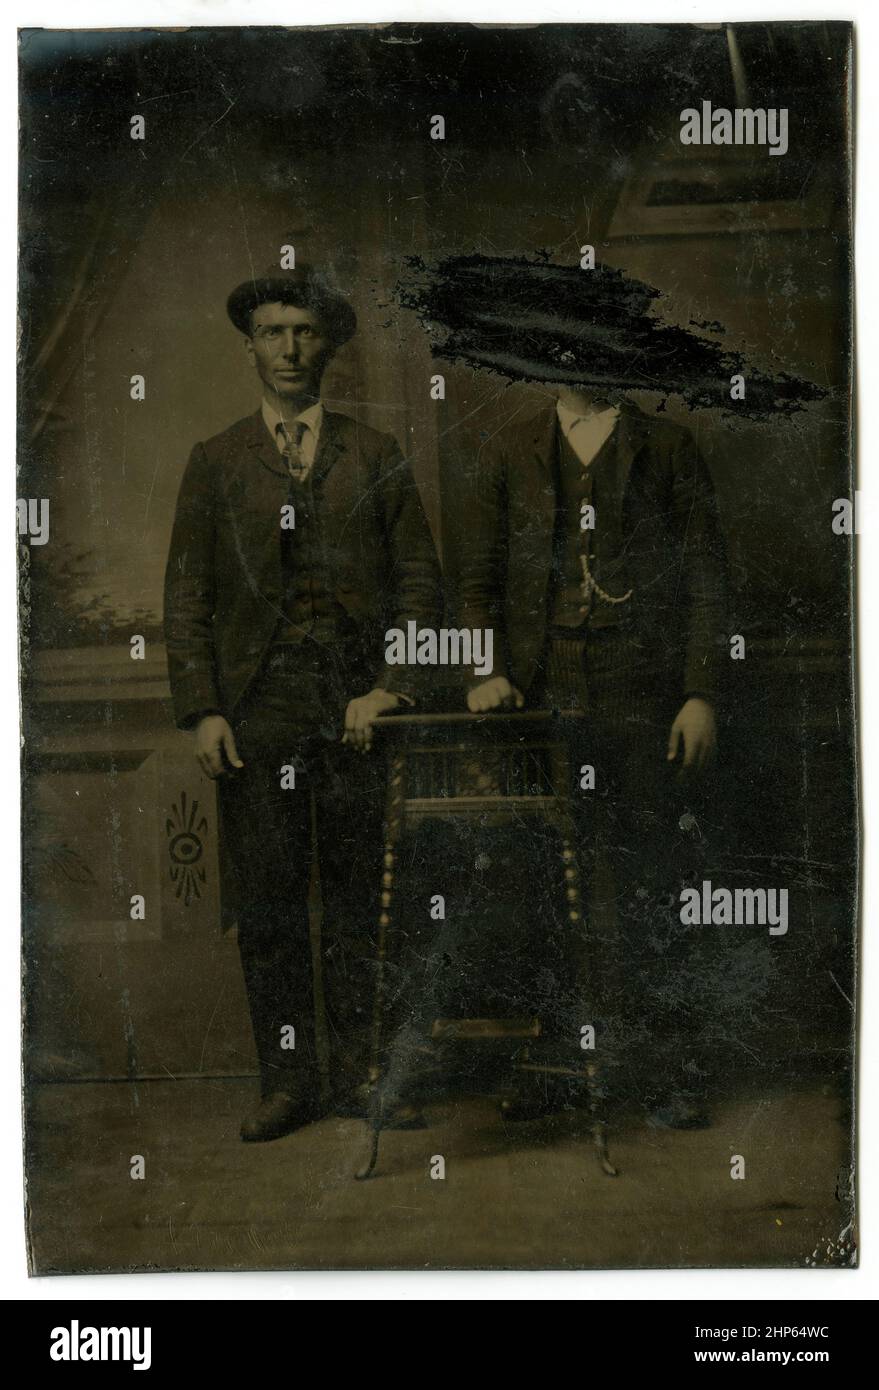 Antikes, um 1860 erzartes Foto, zwei Männer, von denen einer herausgekratzt wurde. Standort unbekannt, USA. QUELLE: ORIGINAL TINTYPE Stockfoto